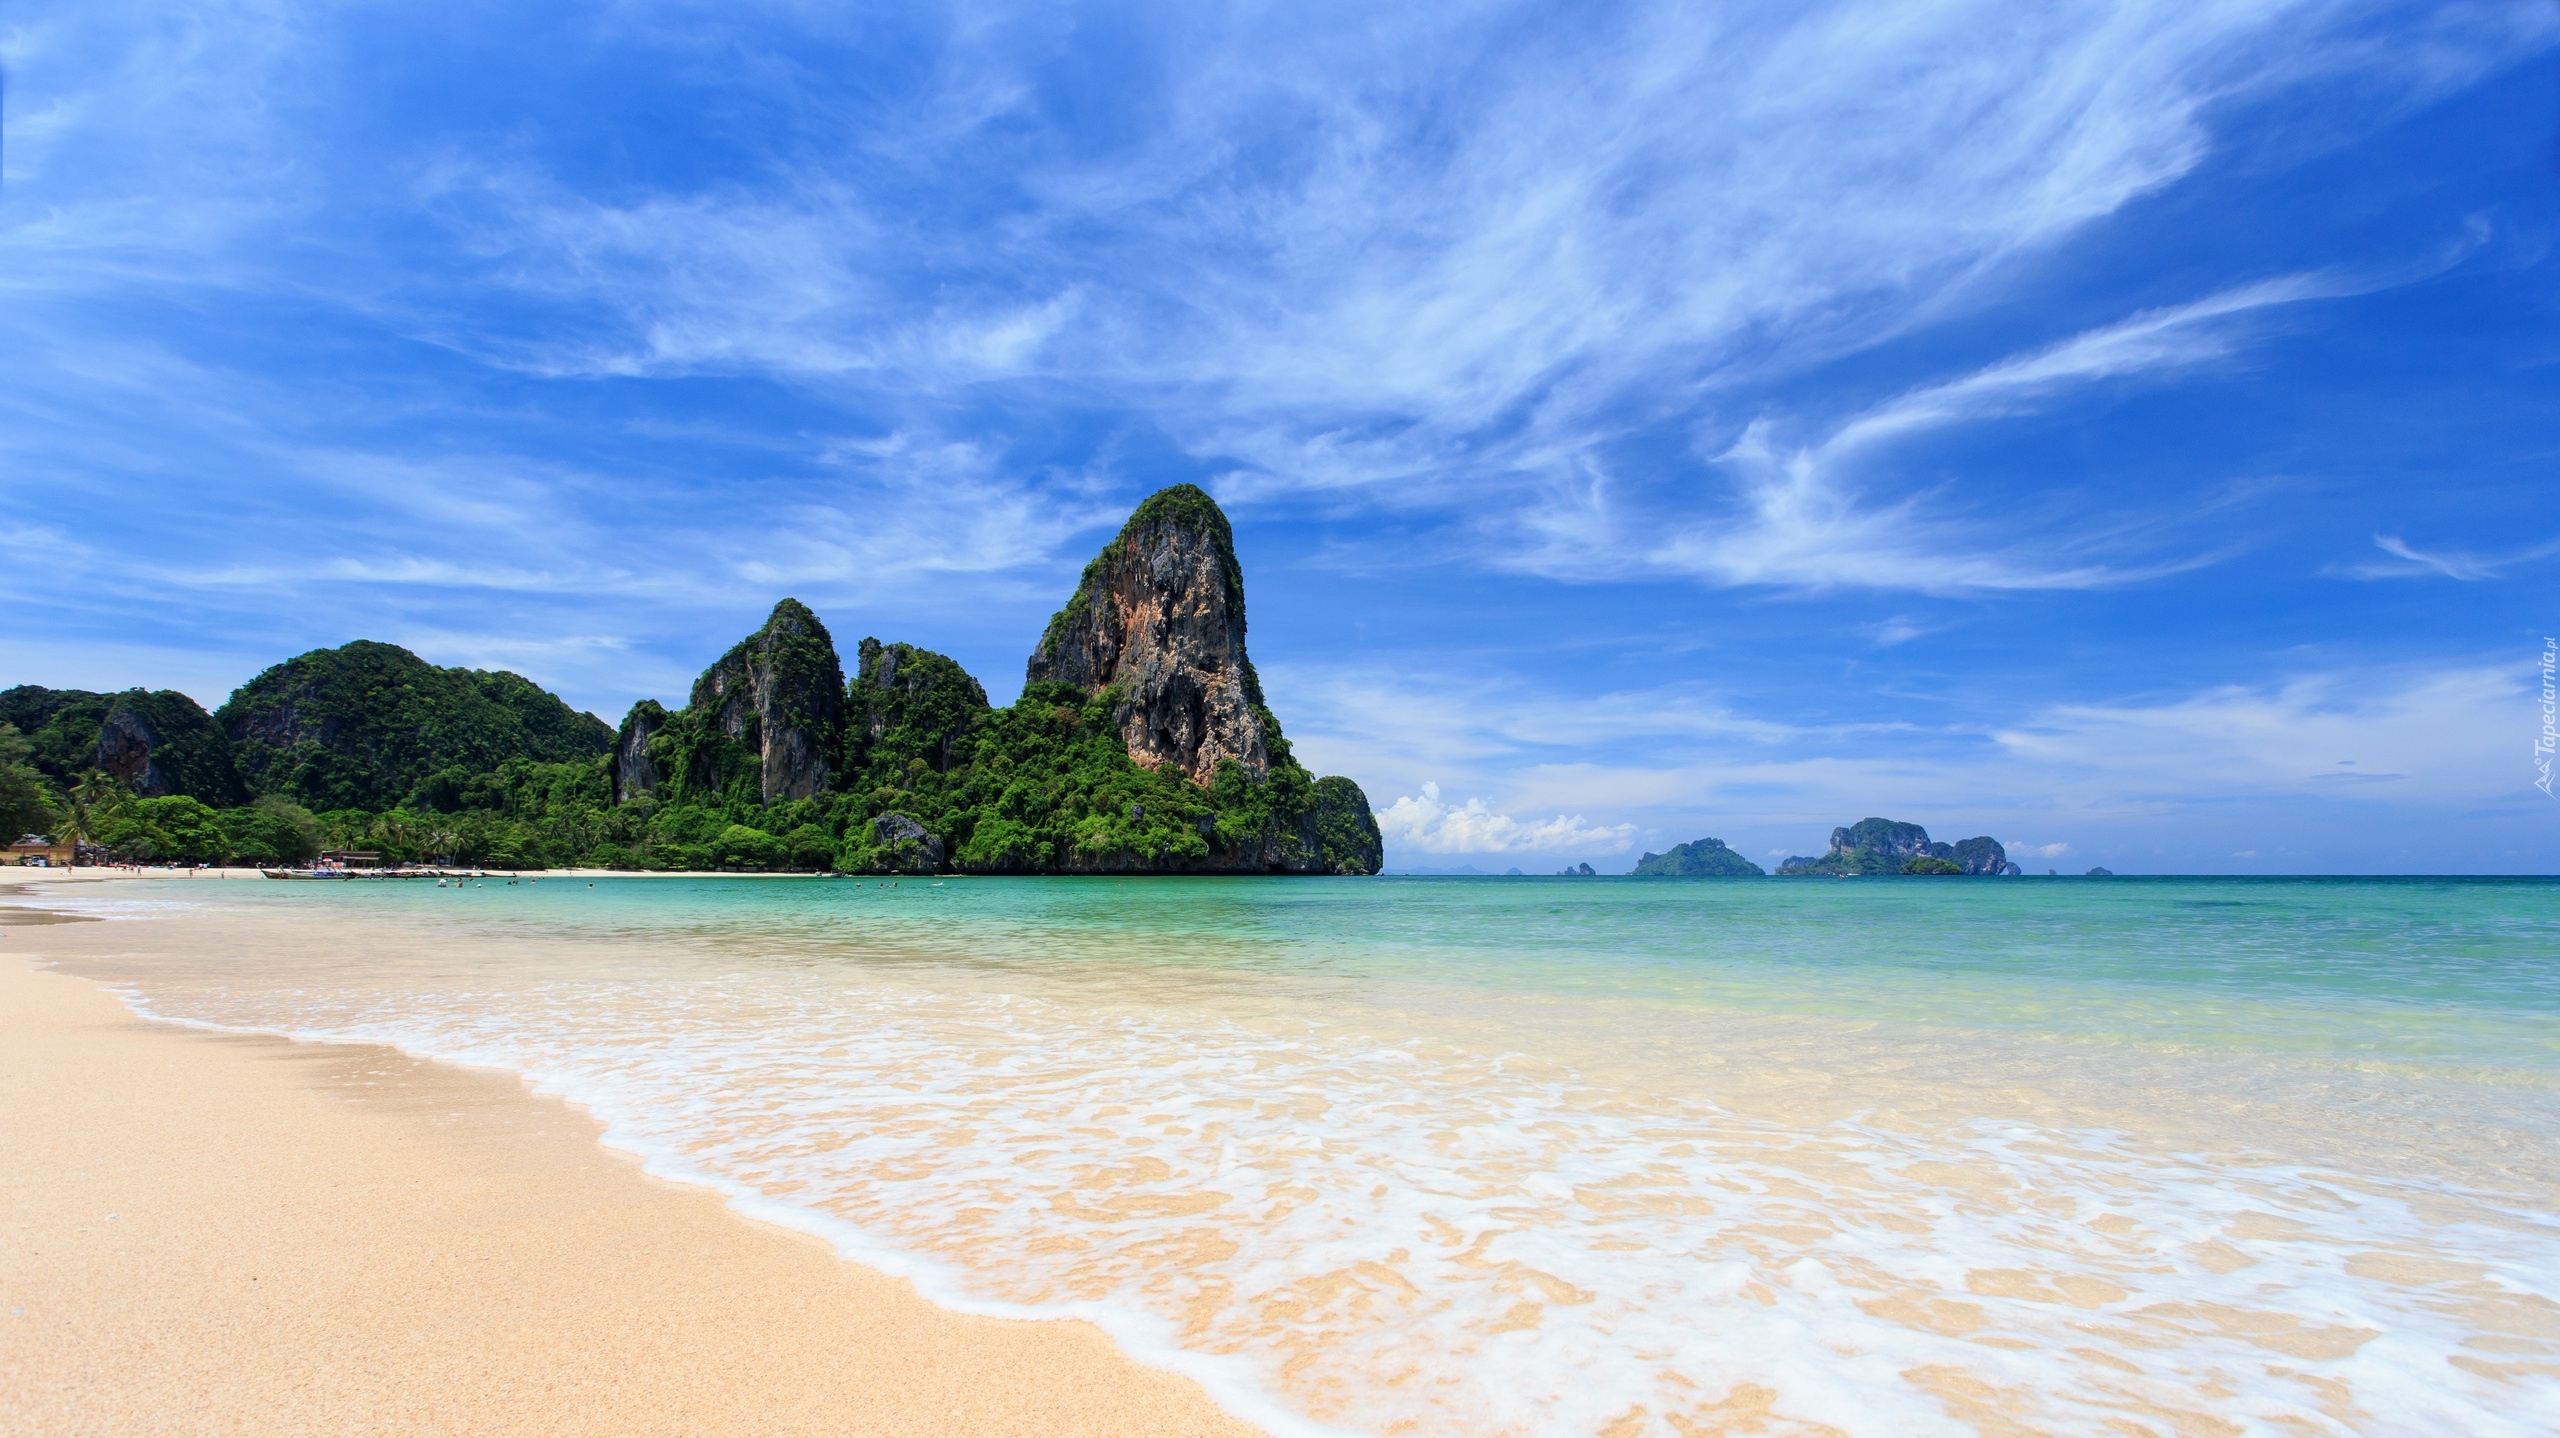 Morze Andamańskie, Plaża Railay Beach, Skały, Prowincja Krabi, Tajlandia, Drzewa, Chmury